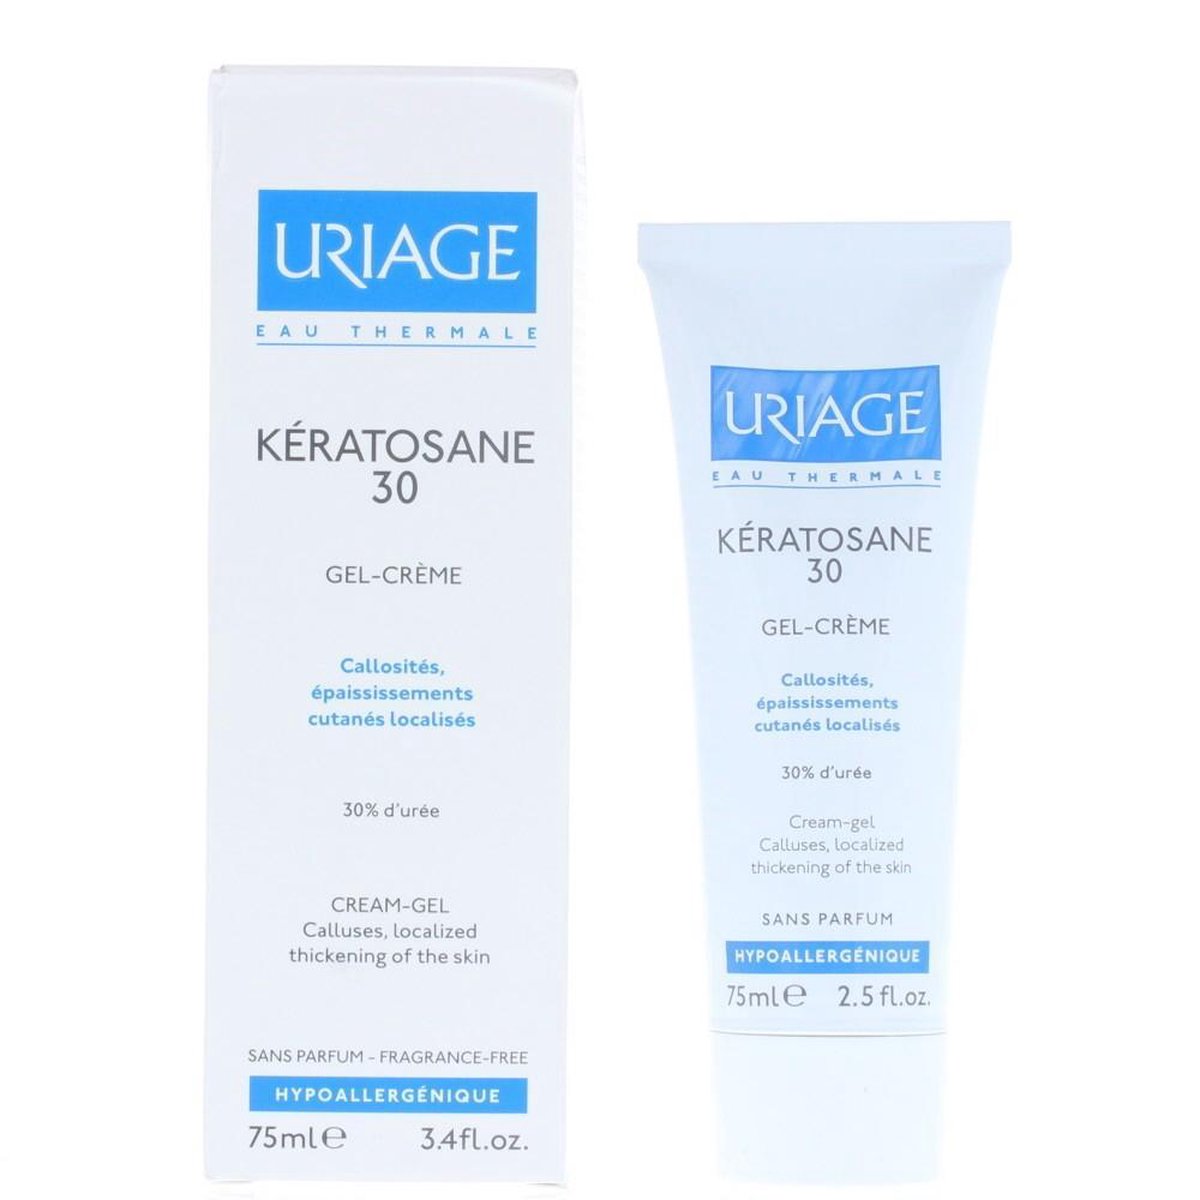 Uriage Kératosane 30 gel-crème 75ml | bol.com